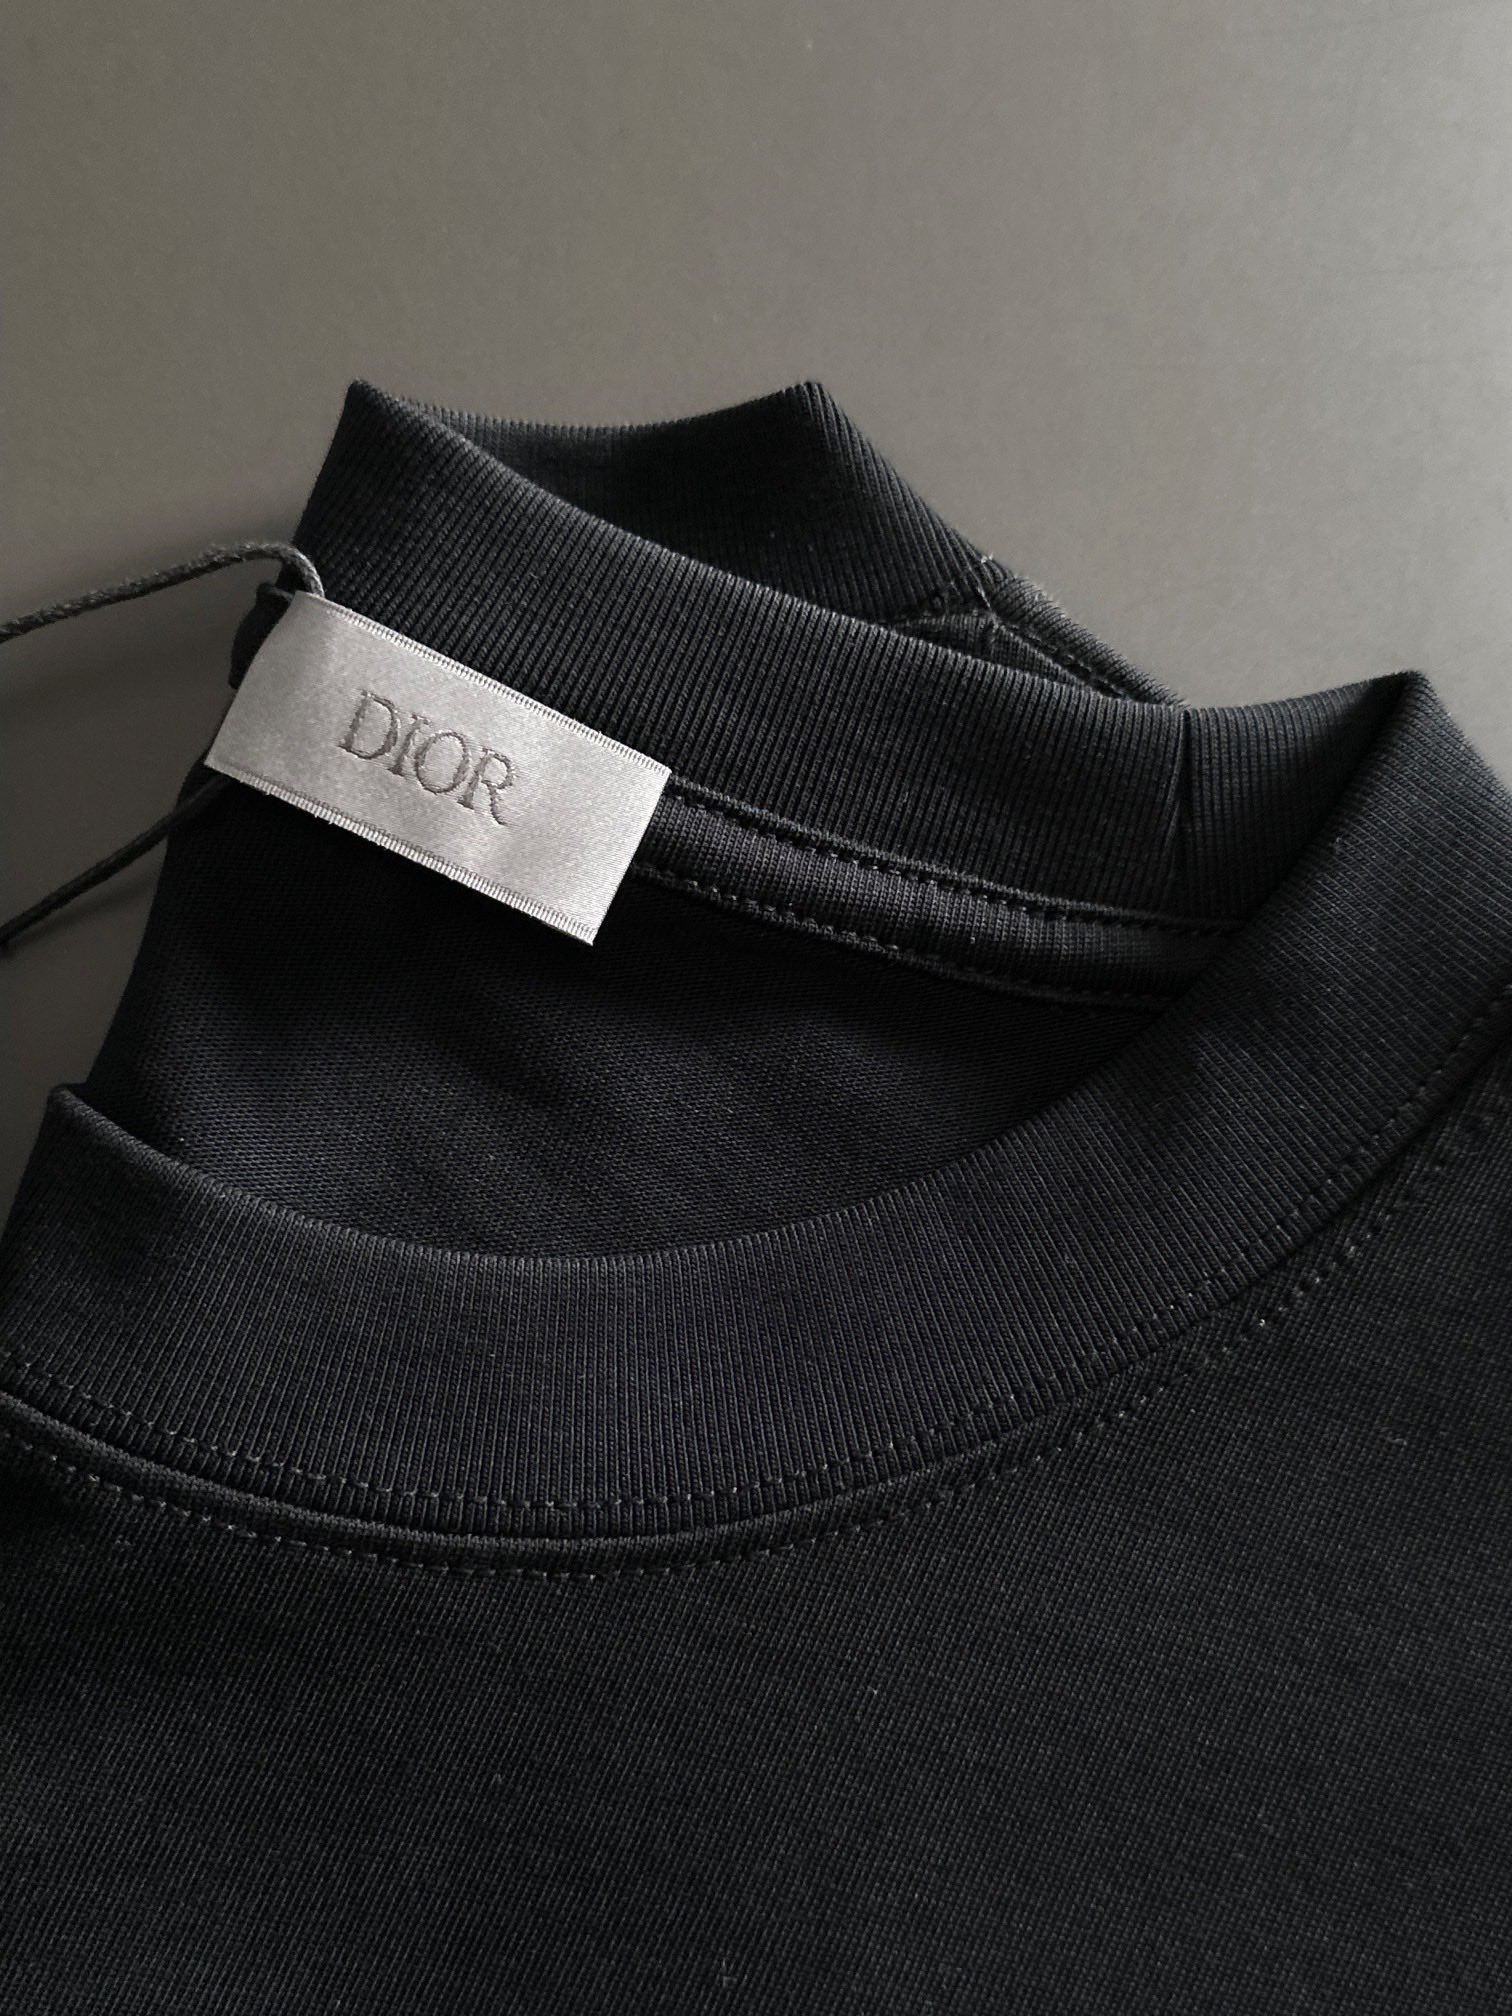 爆買い大得価 ディオール tシャツ激安通販 短袖 品質保証 トップス 純綿 シンプル 人気新品 柔らかい ブラック_5